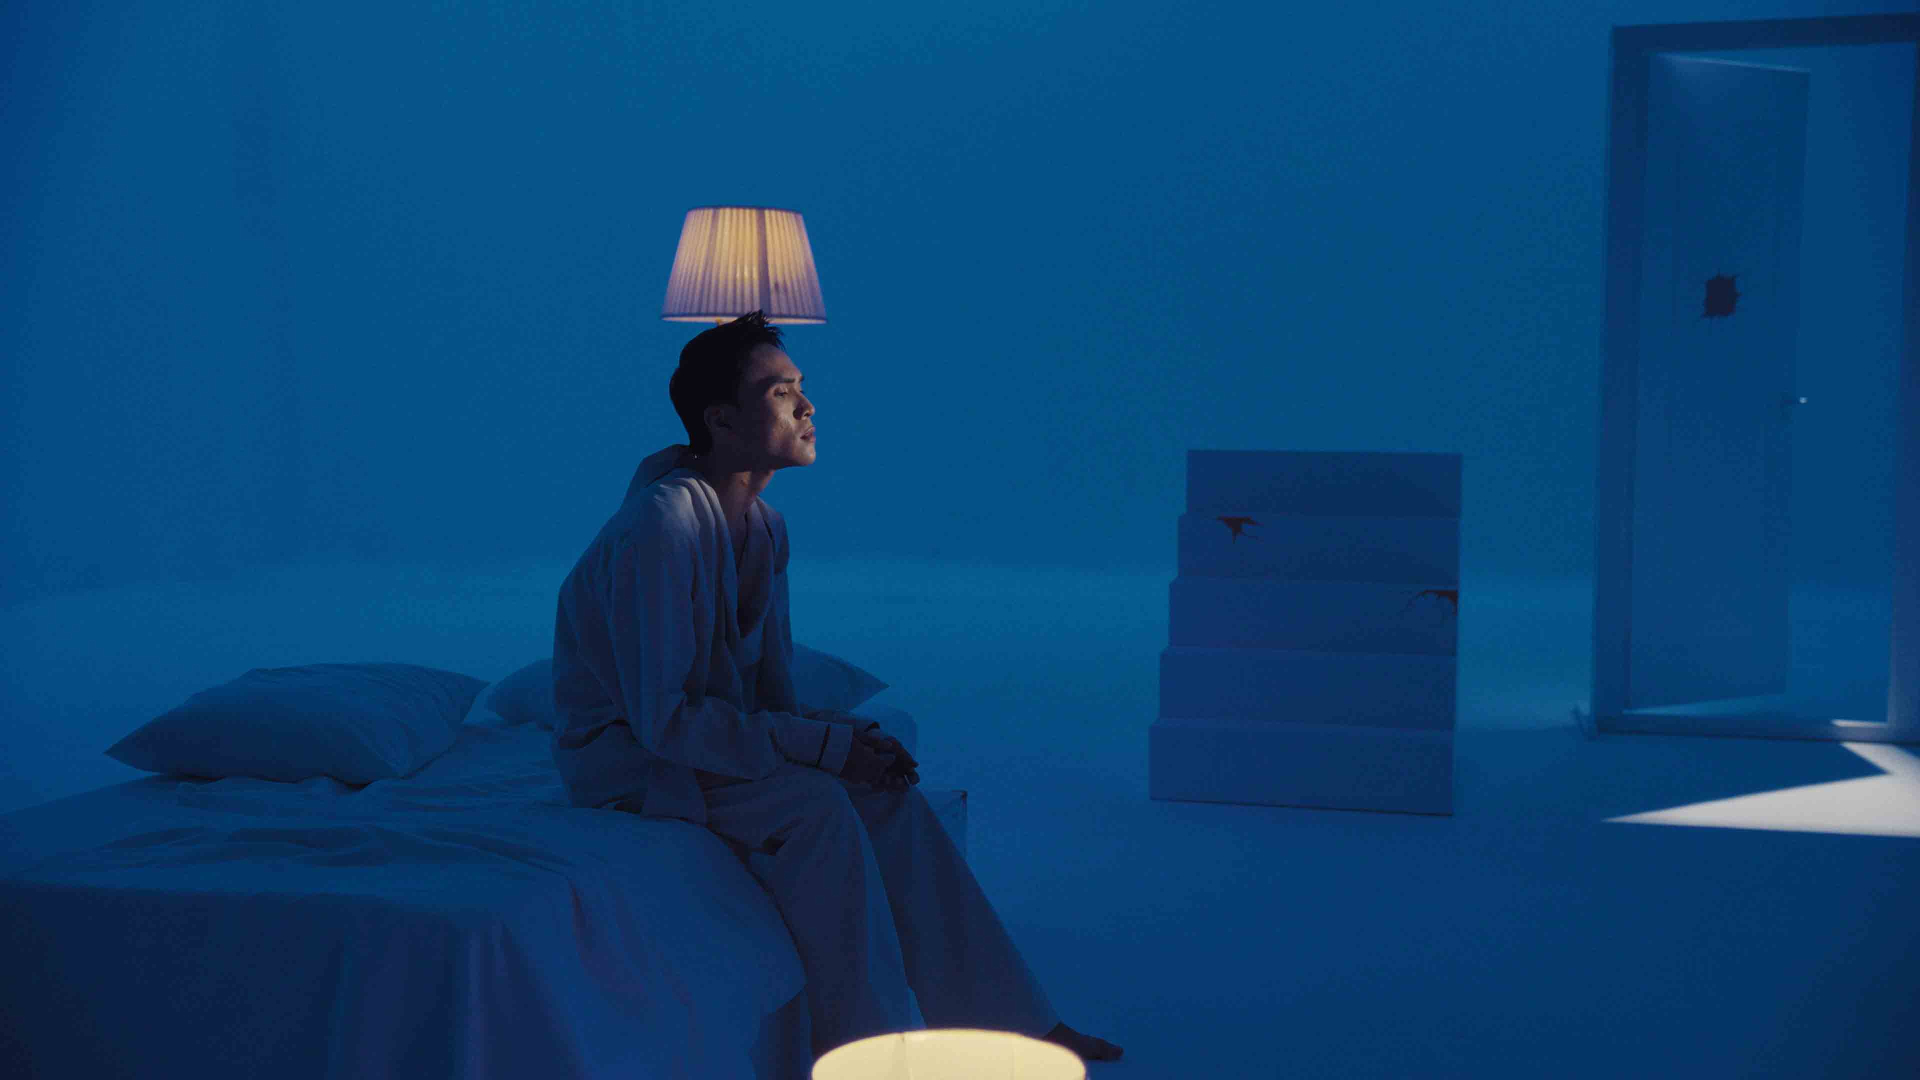 Ca sĩ Kiey tung MV đầu tiên trong album vol.3, hình ảnh đậm màu sắc “đam mỹ” - ảnh 5